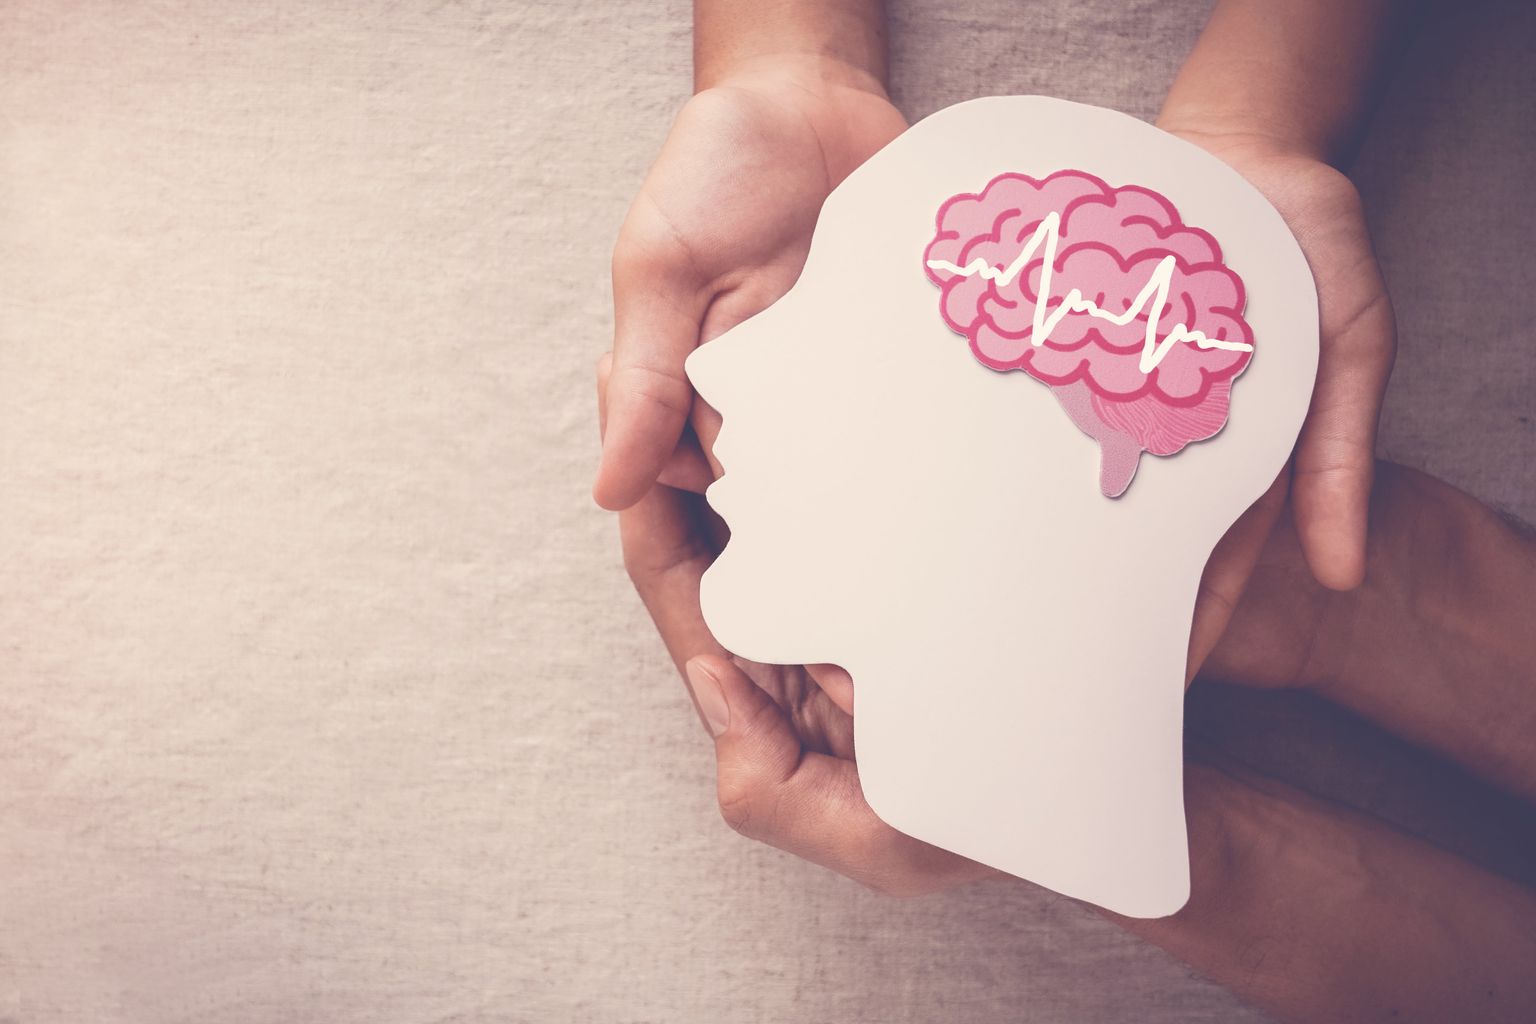 Dos pares de manos que sostienen una cabeza recortada en papel con un cerebro dibujado con una encefalografía simbólica que simboliza la epilepsia.